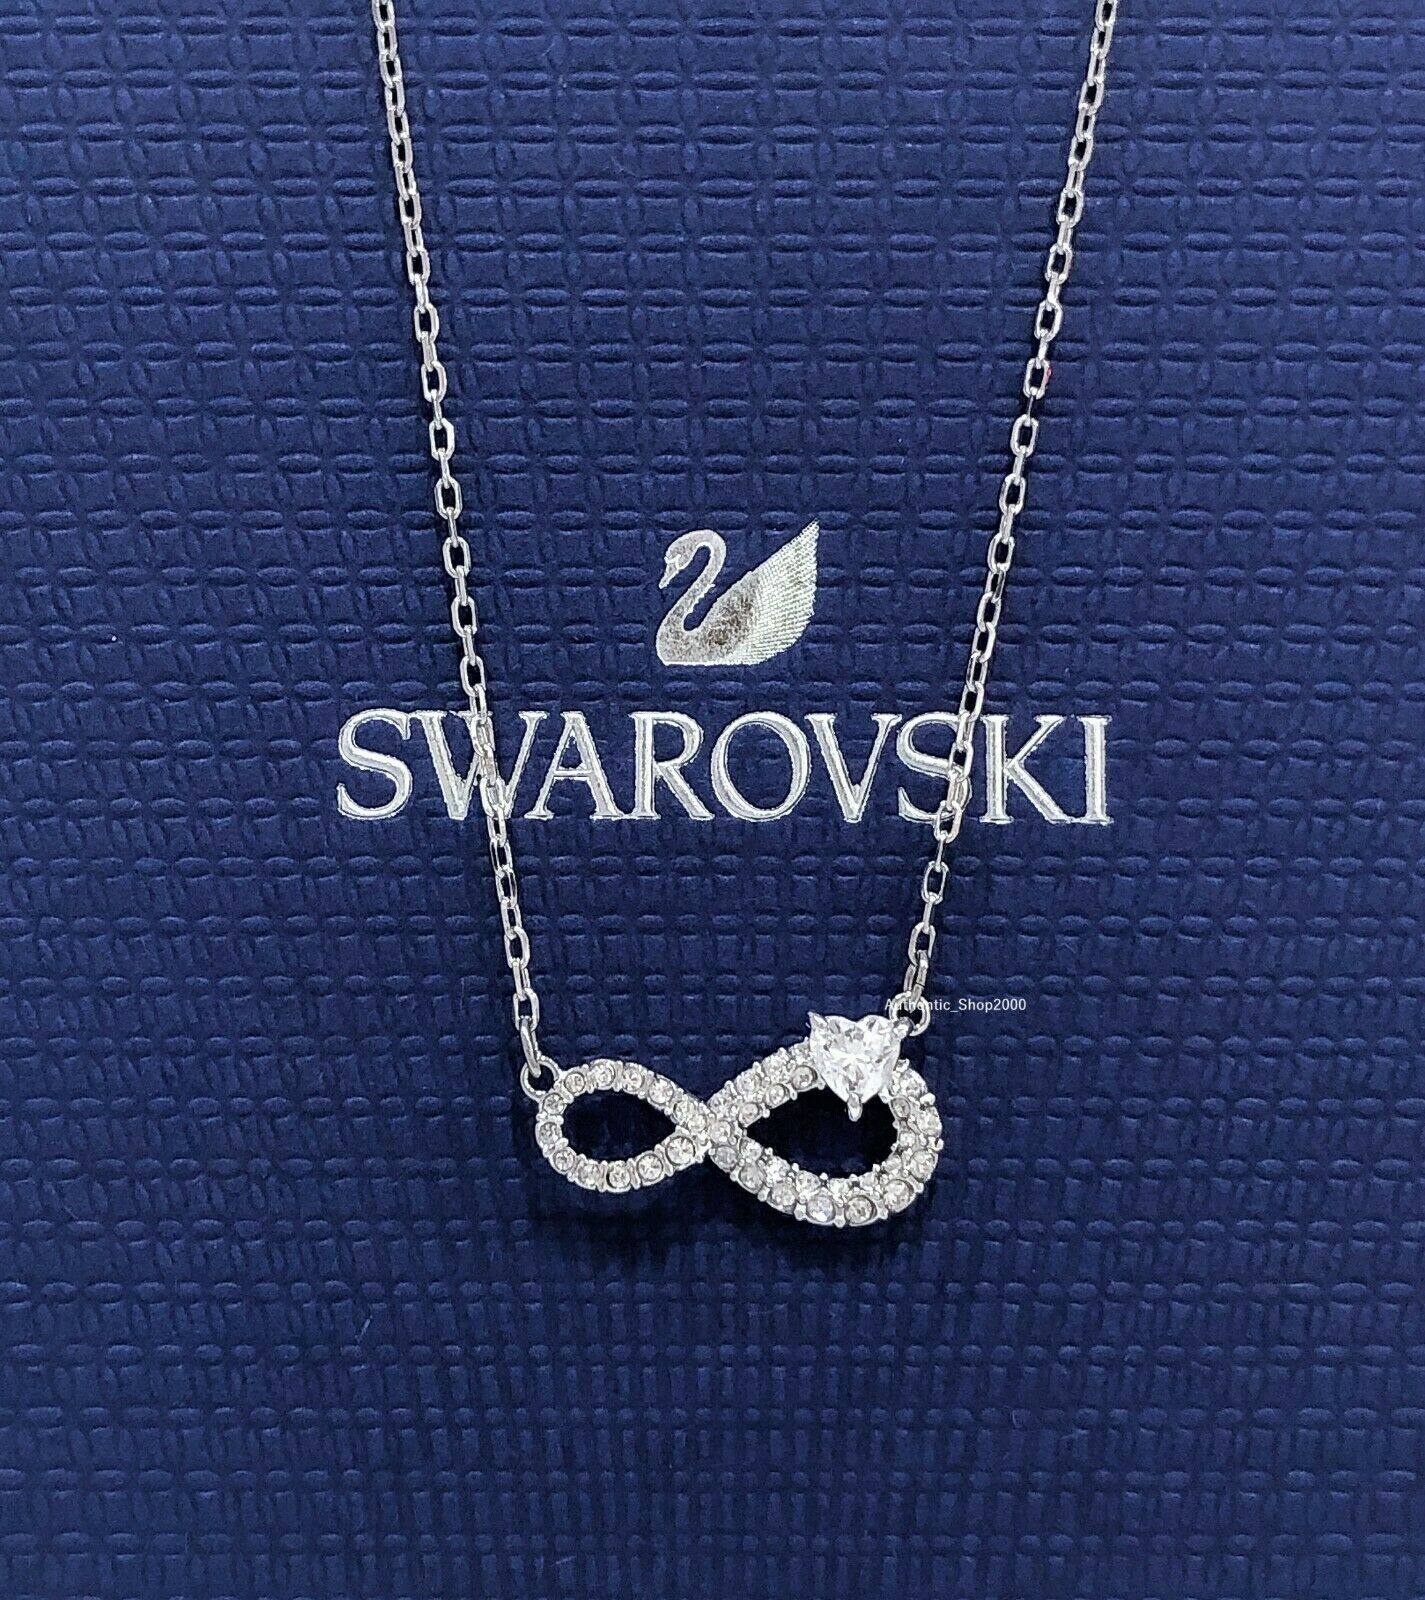 【SALE】?พร้อมส่ง?Swarovskiแท้ สร้อยคอ SWAROVSKI INFINITY necklace สวาล๊อฟกี swarovski สร้อยคอแท้ สวารอฟส ของแท้ 100% ของขวัญสำหรับคนพิเศษ SWARO